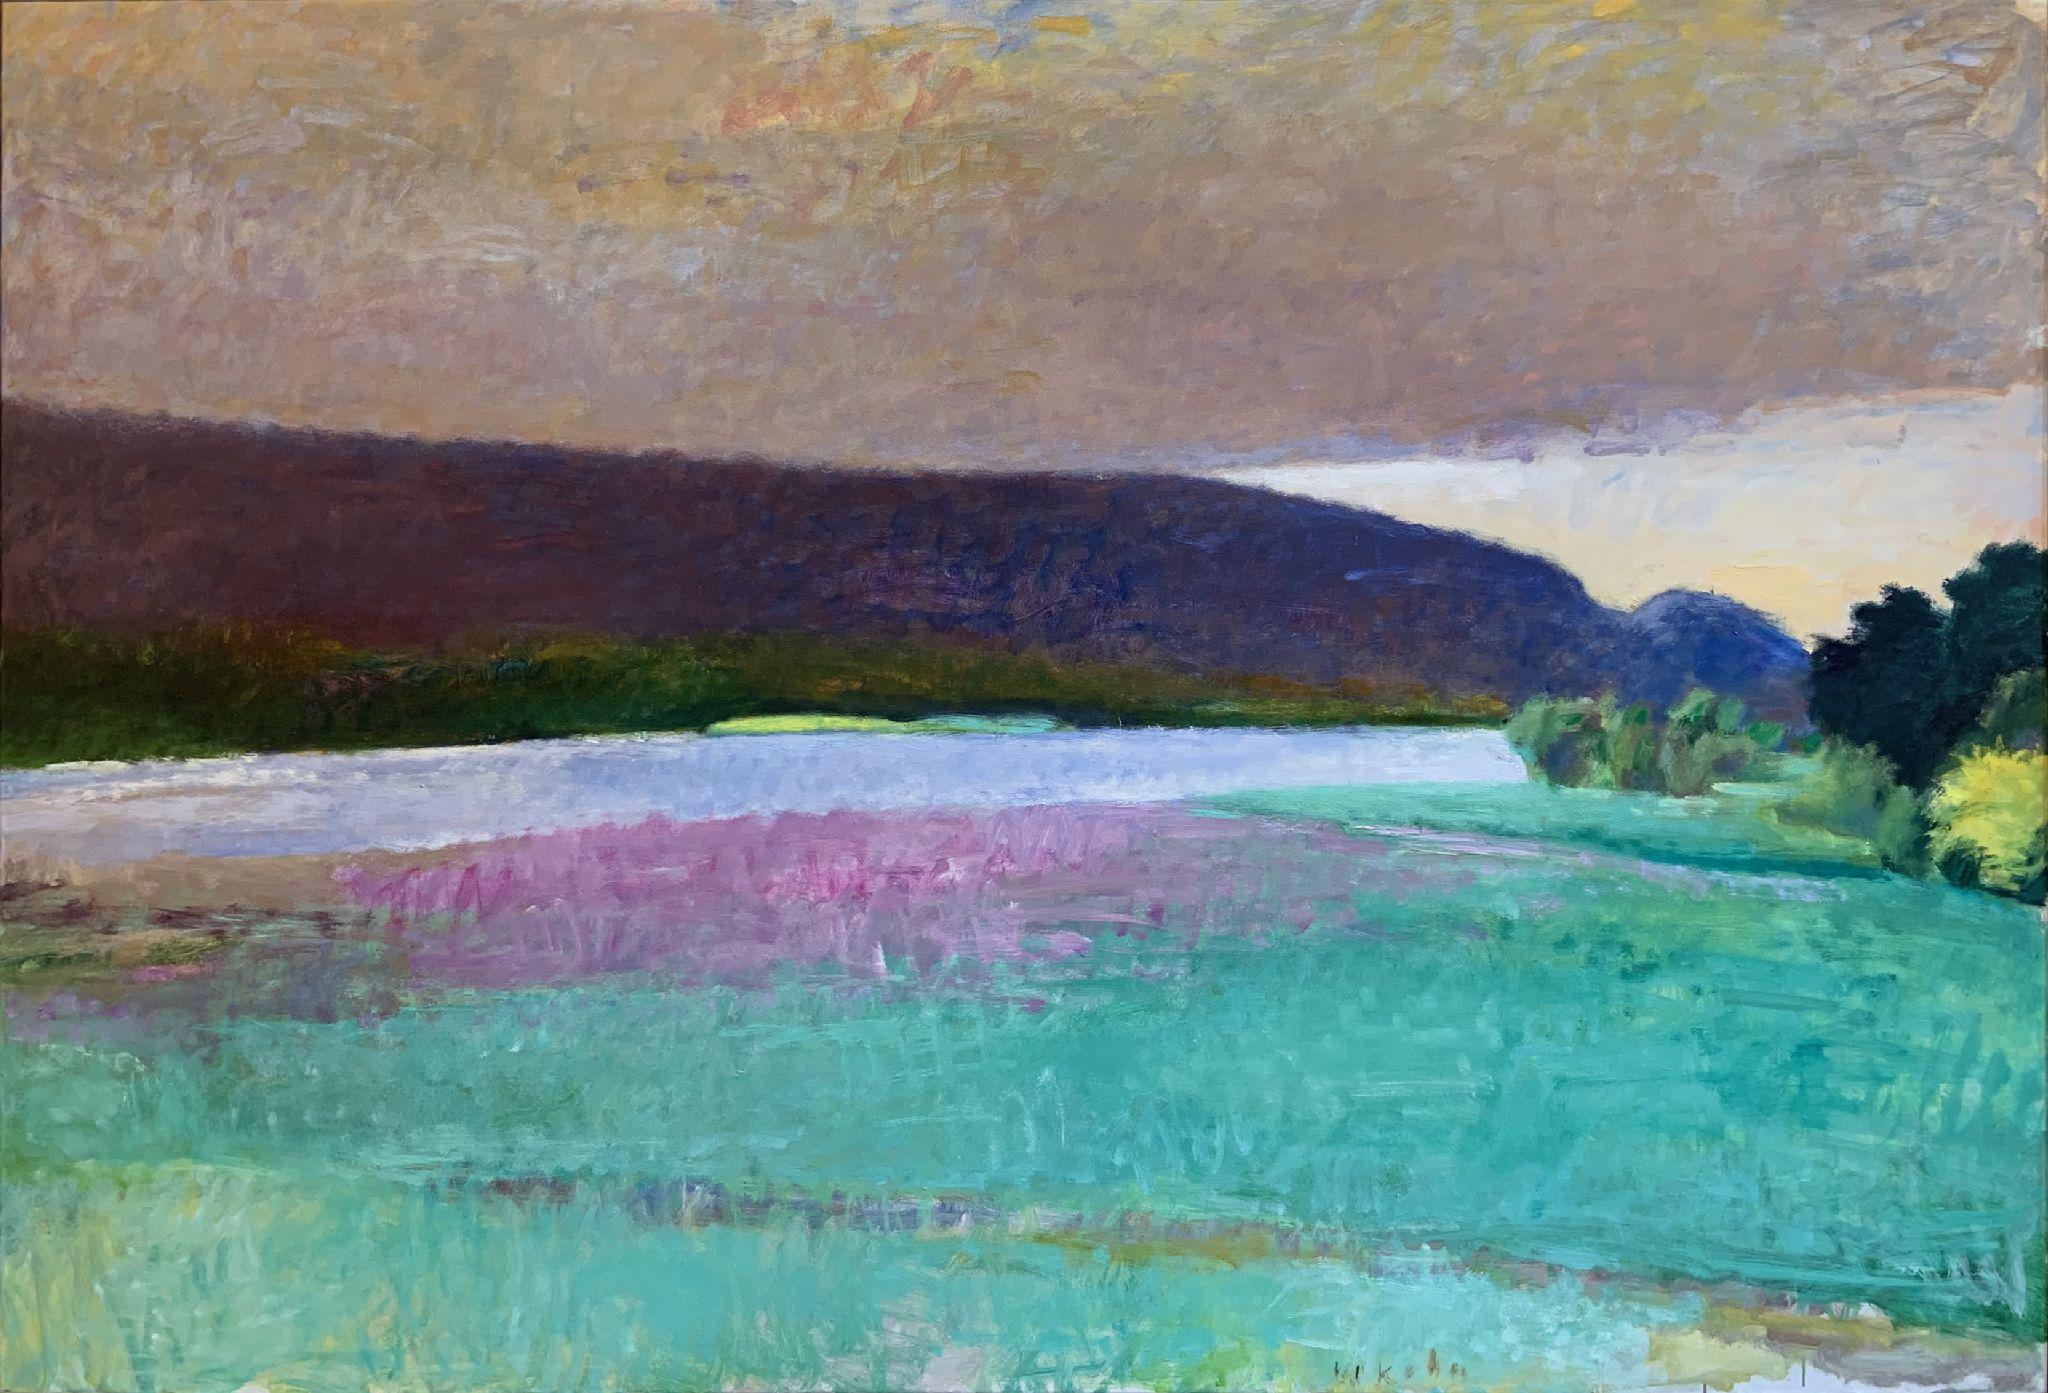 Nebelbank hebt sich über dem Connecticut River – Painting von Wolf Kahn